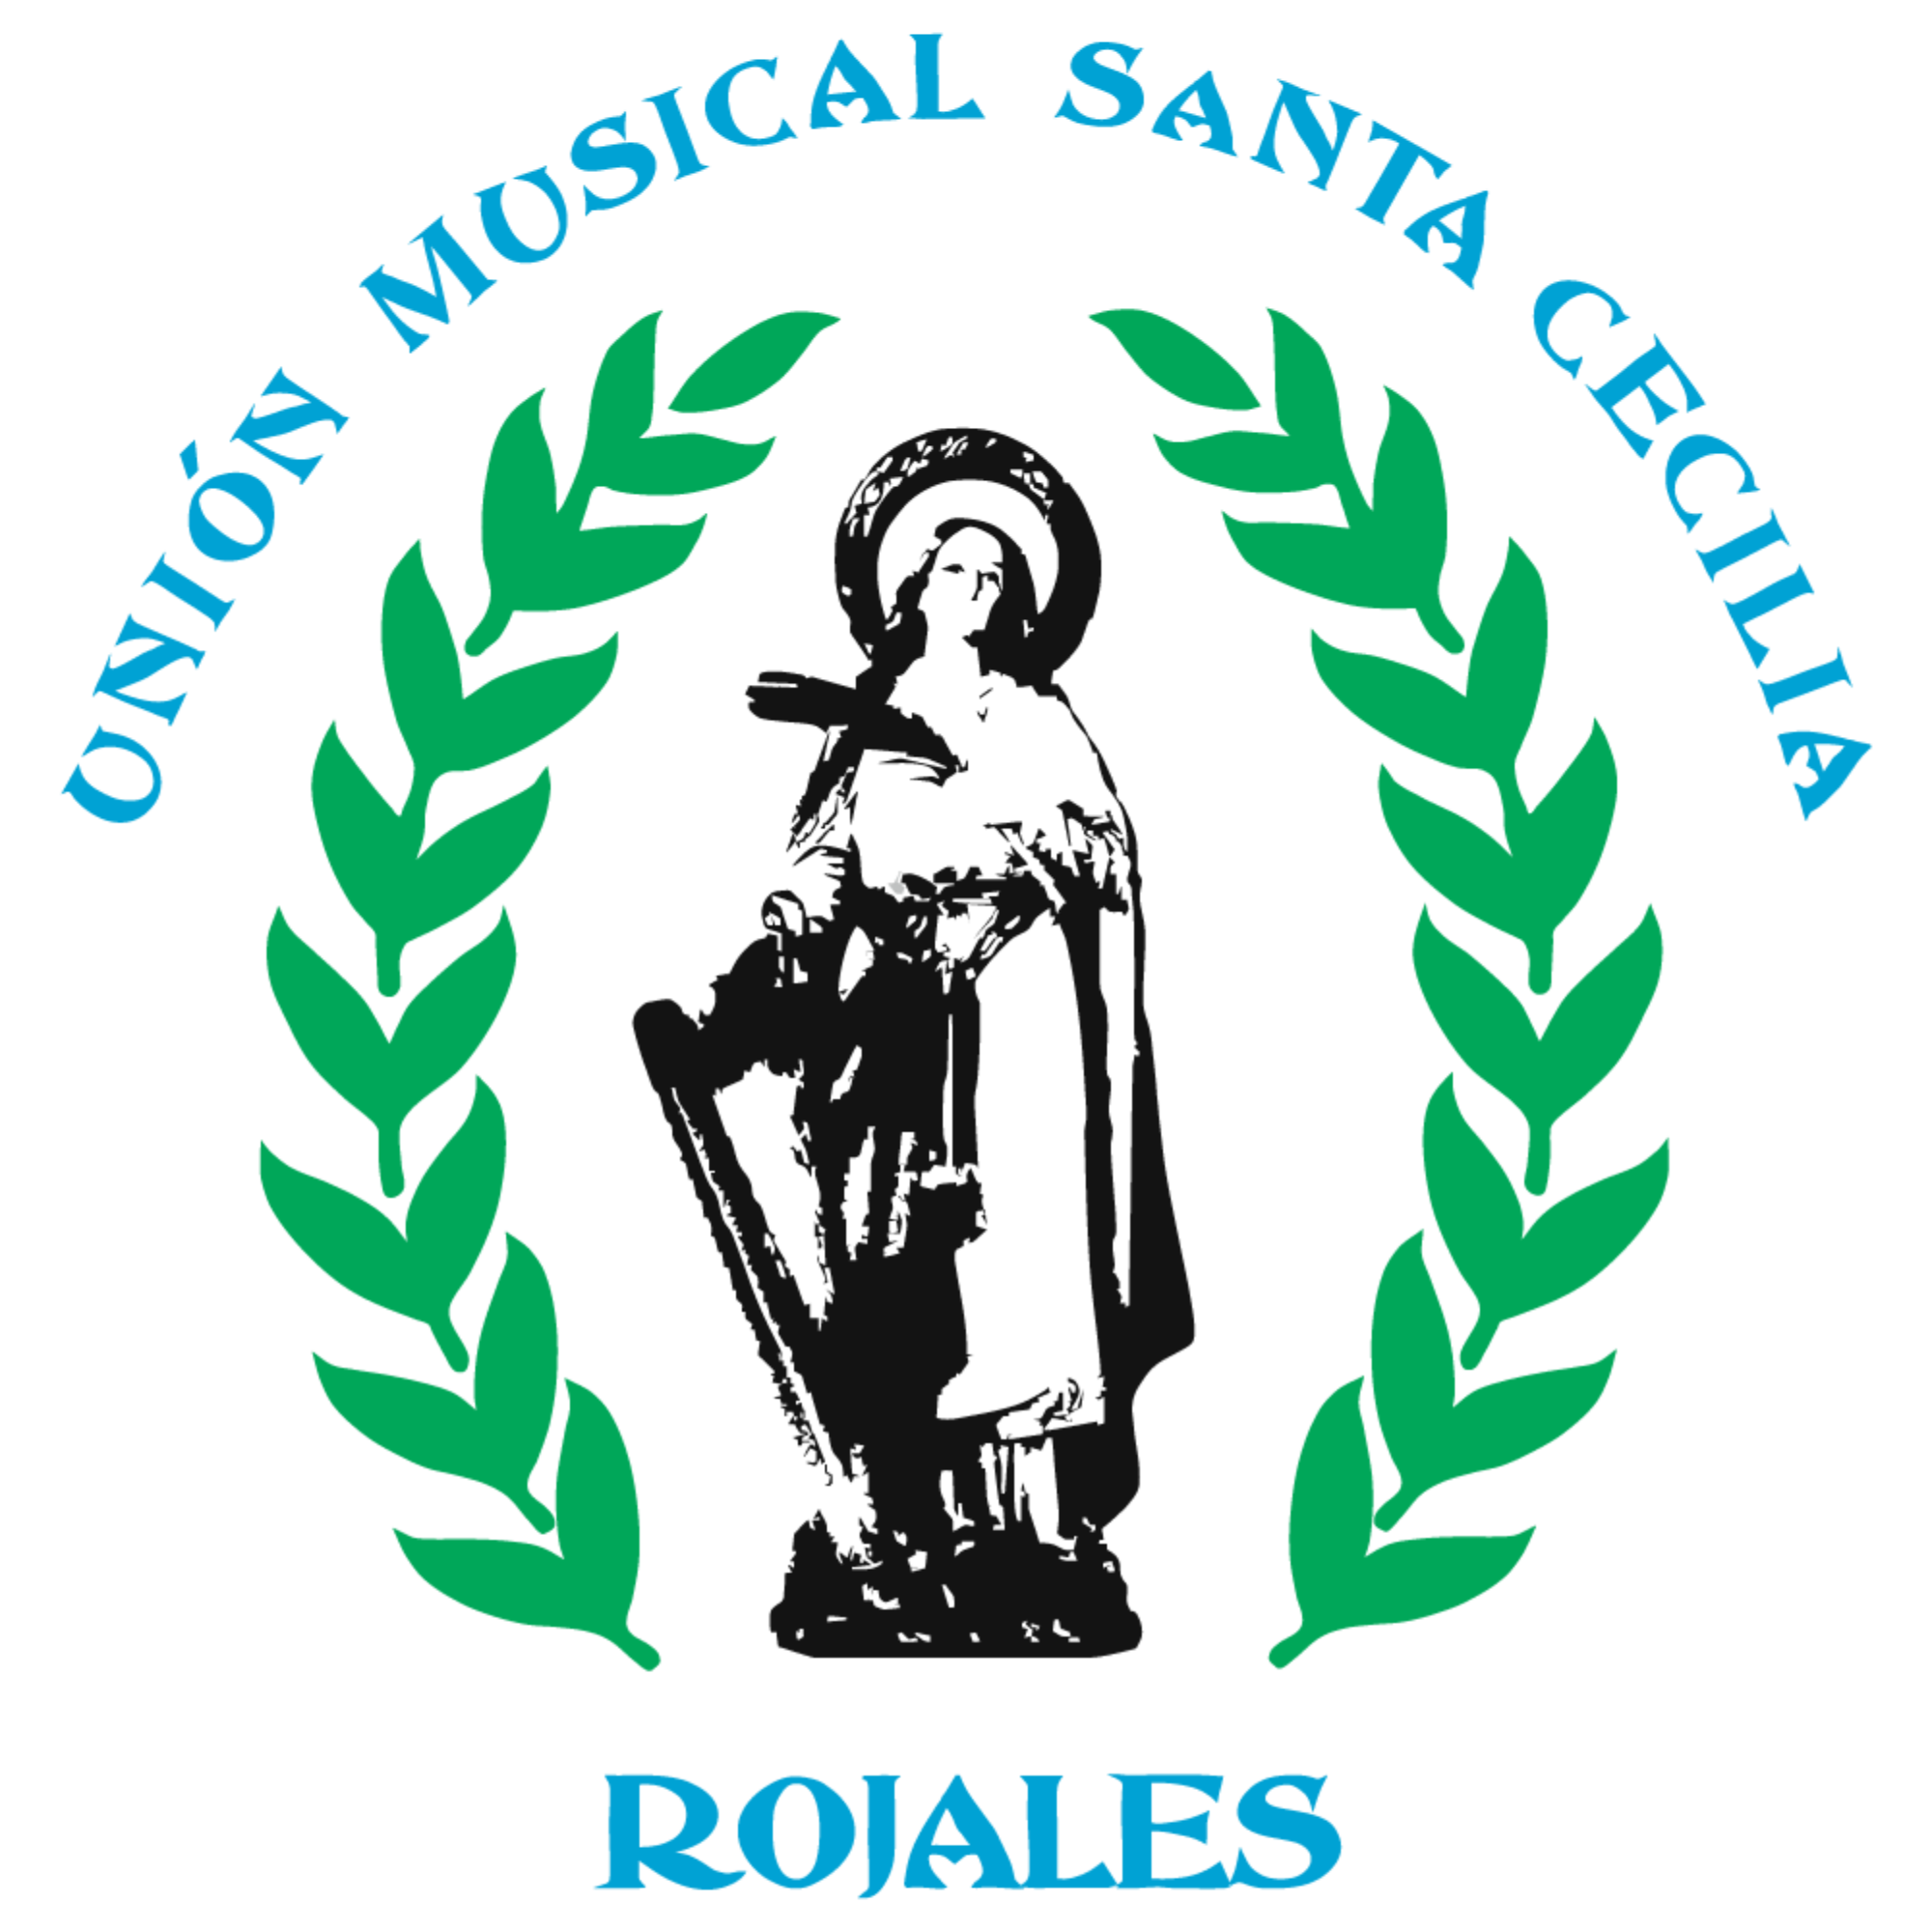 Unión Musical Santa Cecilia Rojales